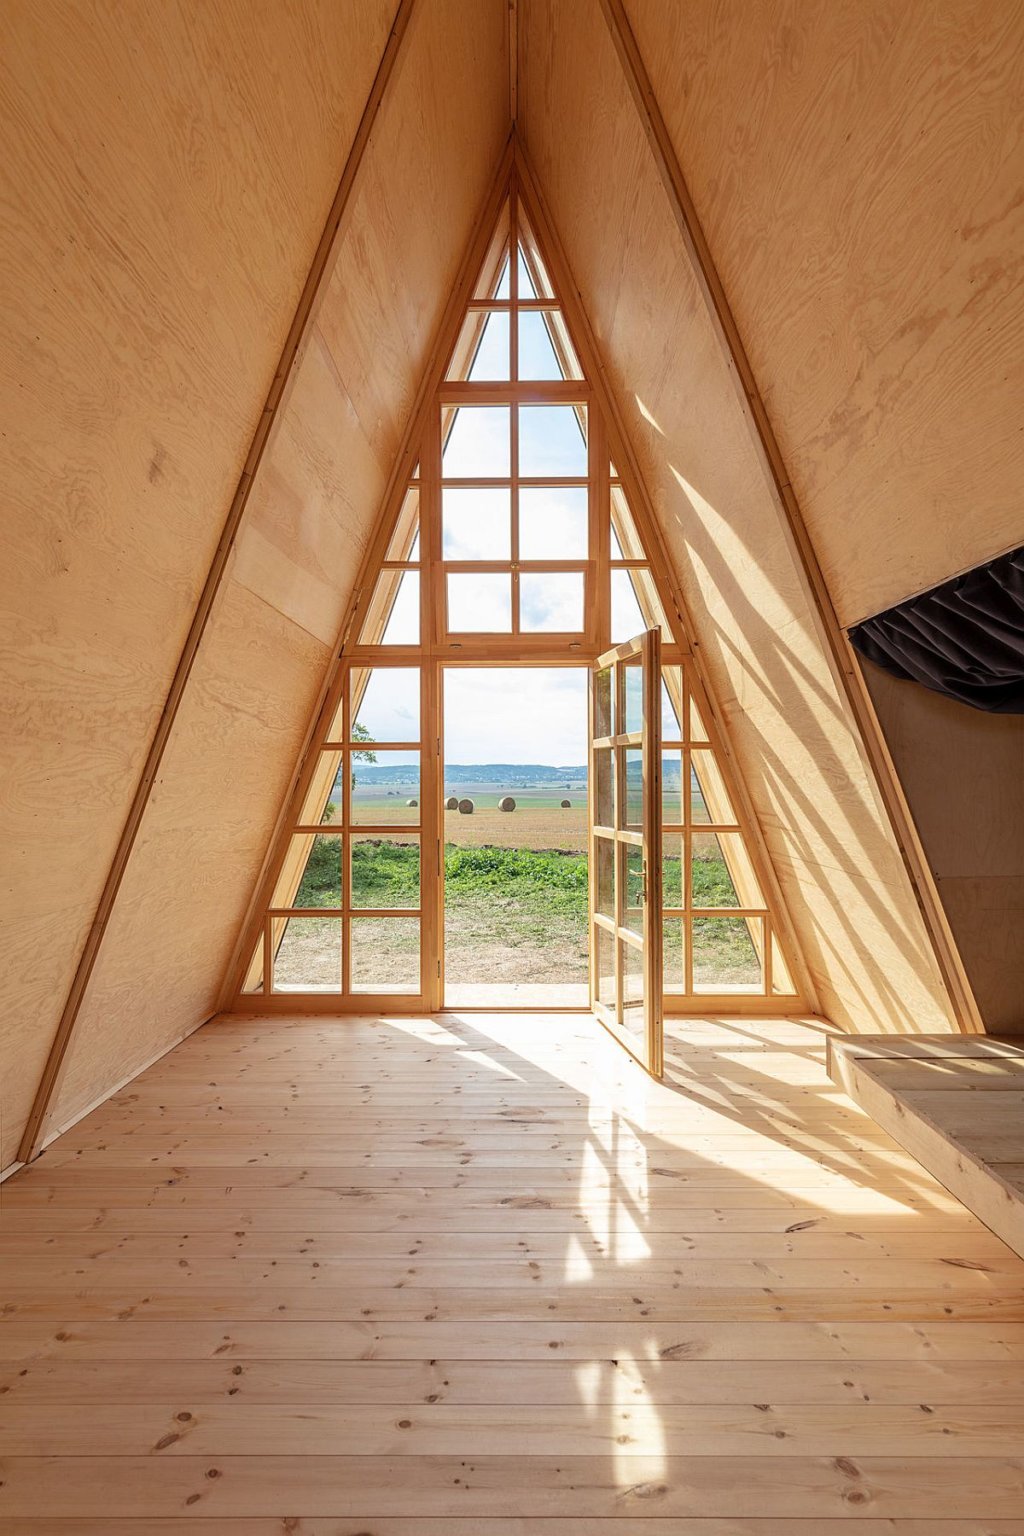 hình ảnh bên trong nhà cabin với trần, tường, sàn ốp lát gỗ thông, cửa kính trong suốt